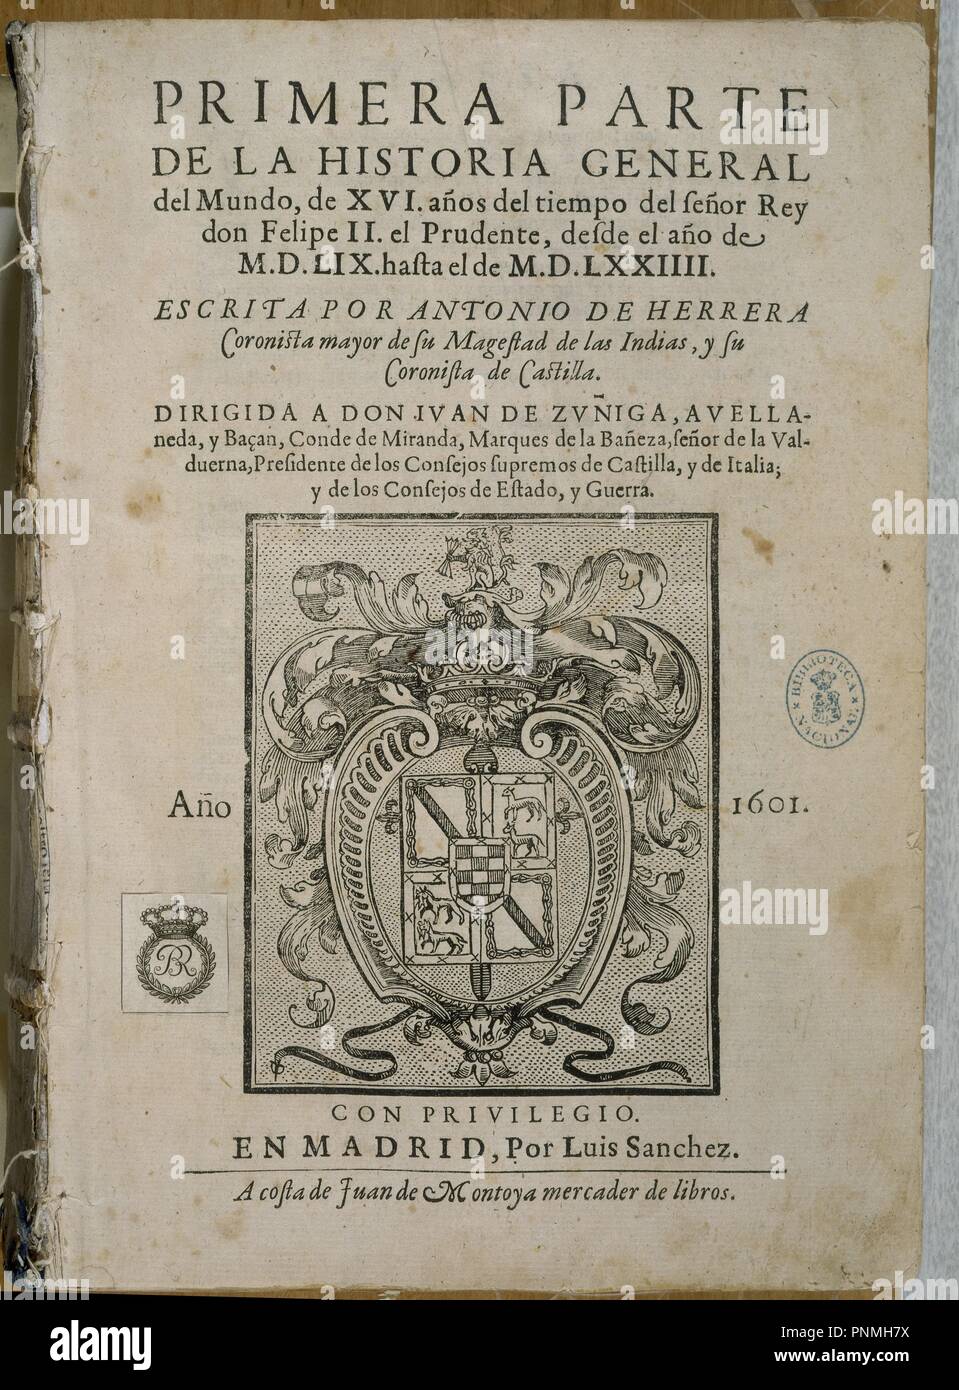 Hº GENERAL DEL MUNDO - PRIMERA PARTE - PORTADA - MADRID 1601. Autor: HERRERA Y CASTILLA ANTONIO. Lage: Biblioteca Nacional - coleccion. MADRID. Spanien. Stockfoto